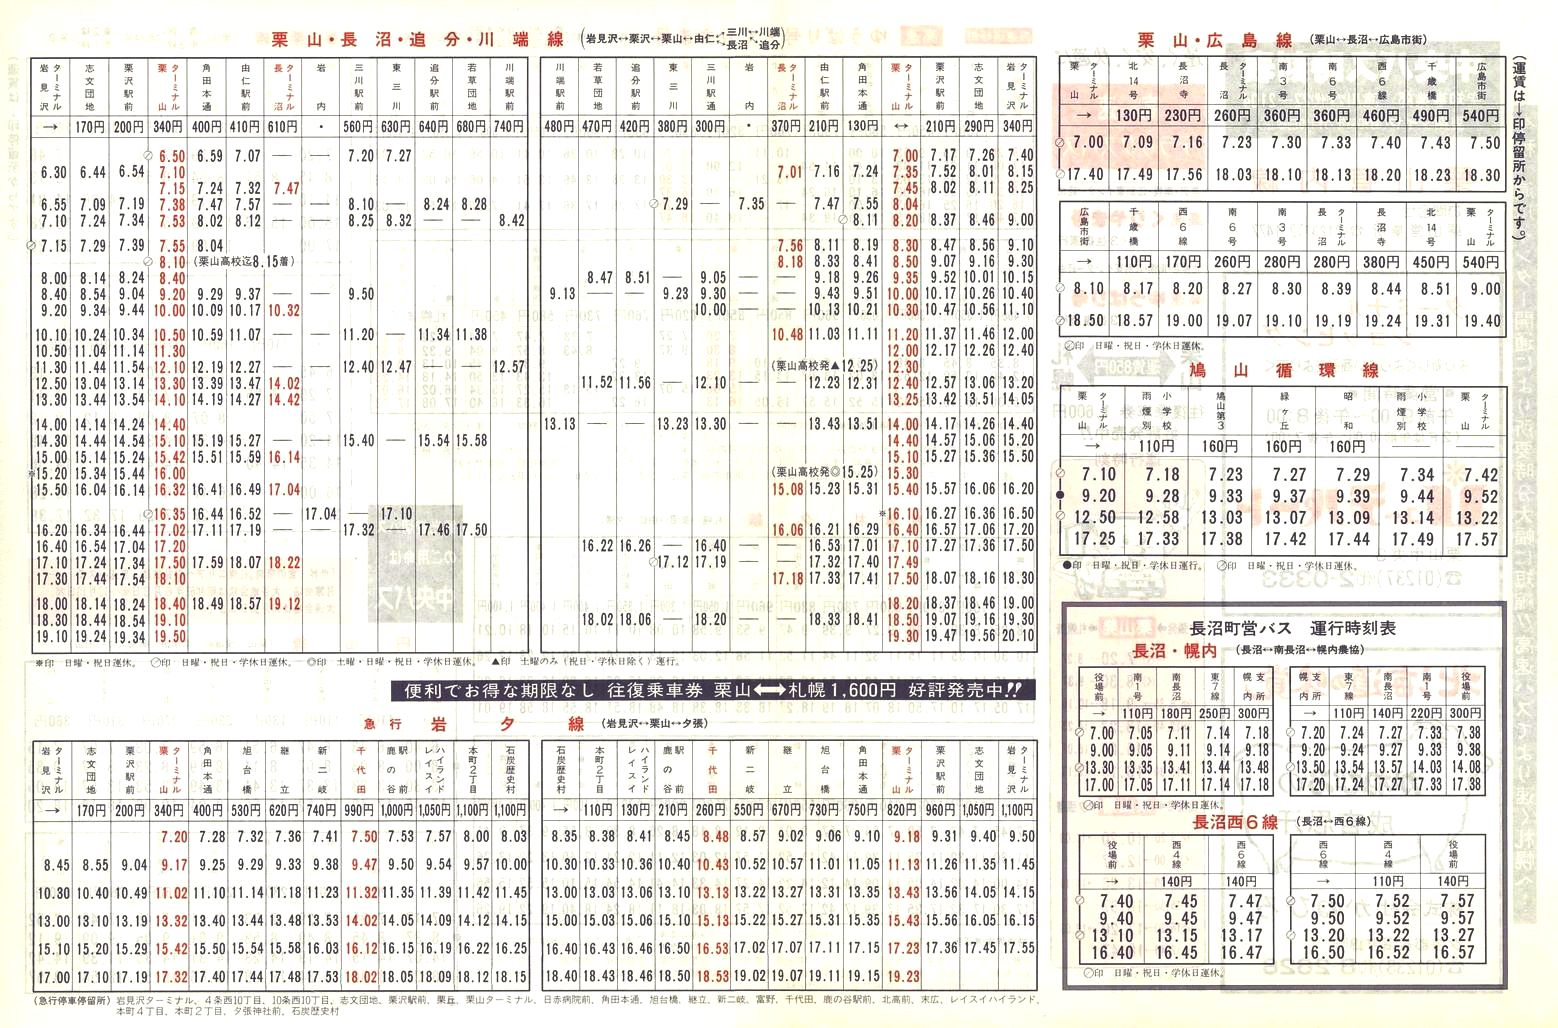 1988-04-10改正_北海道中央バス(空知)_栗山管内線時刻表裏面